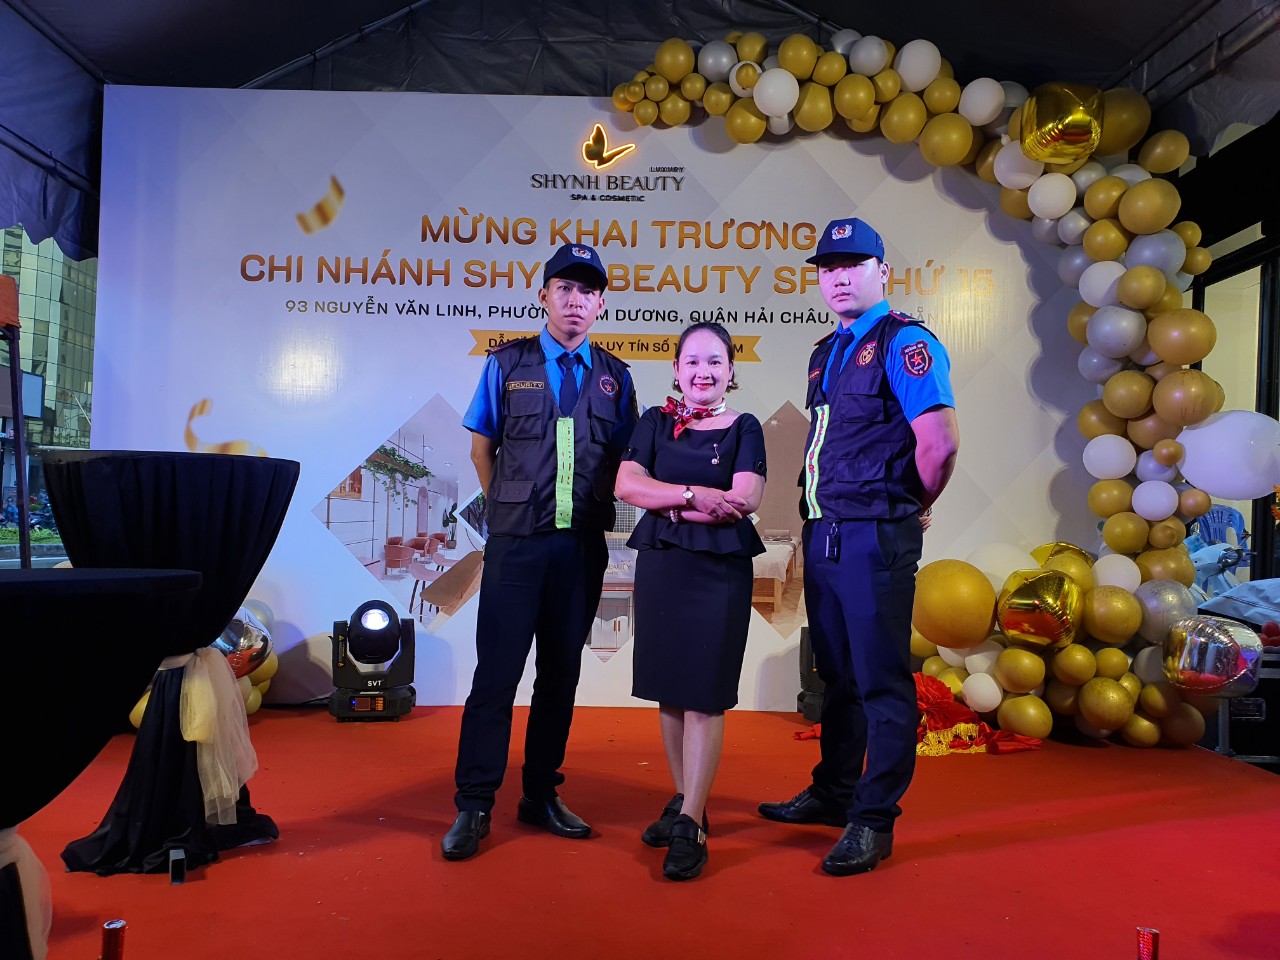 Dịch vụ bảo vệ sự kiện chuyên nghiệp hàng đầu tại Đà Nẵng